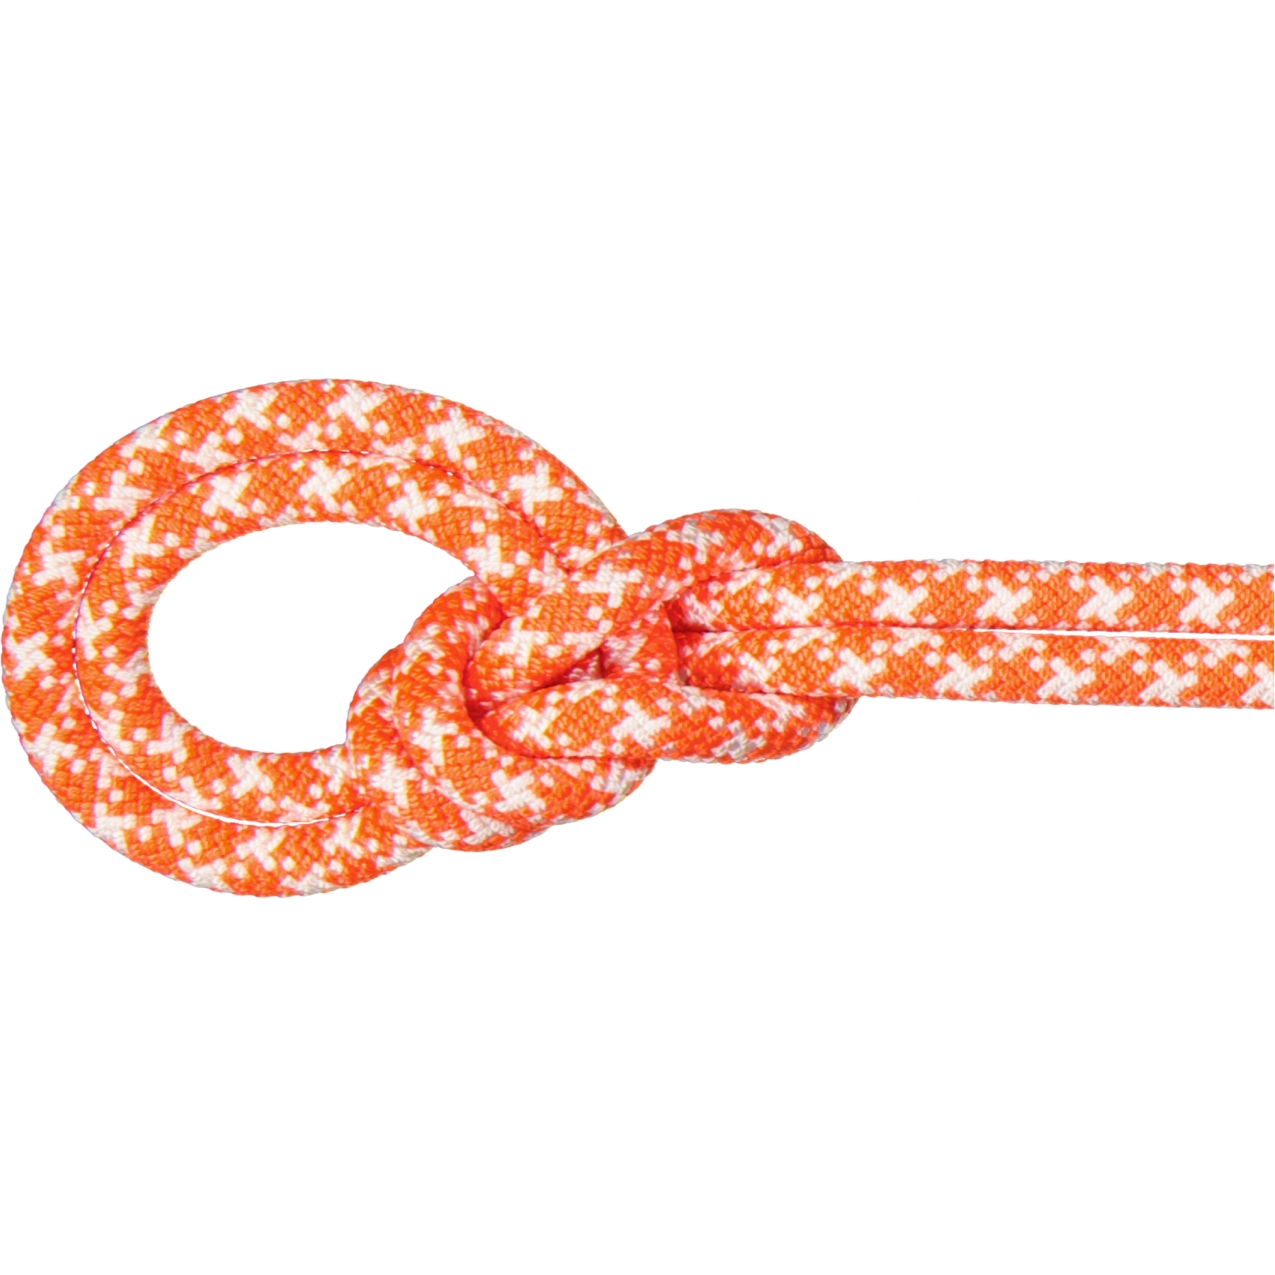 Produktbild von Mammut 9.5 Crag Classic Seil - 70m - vibrant orange-white